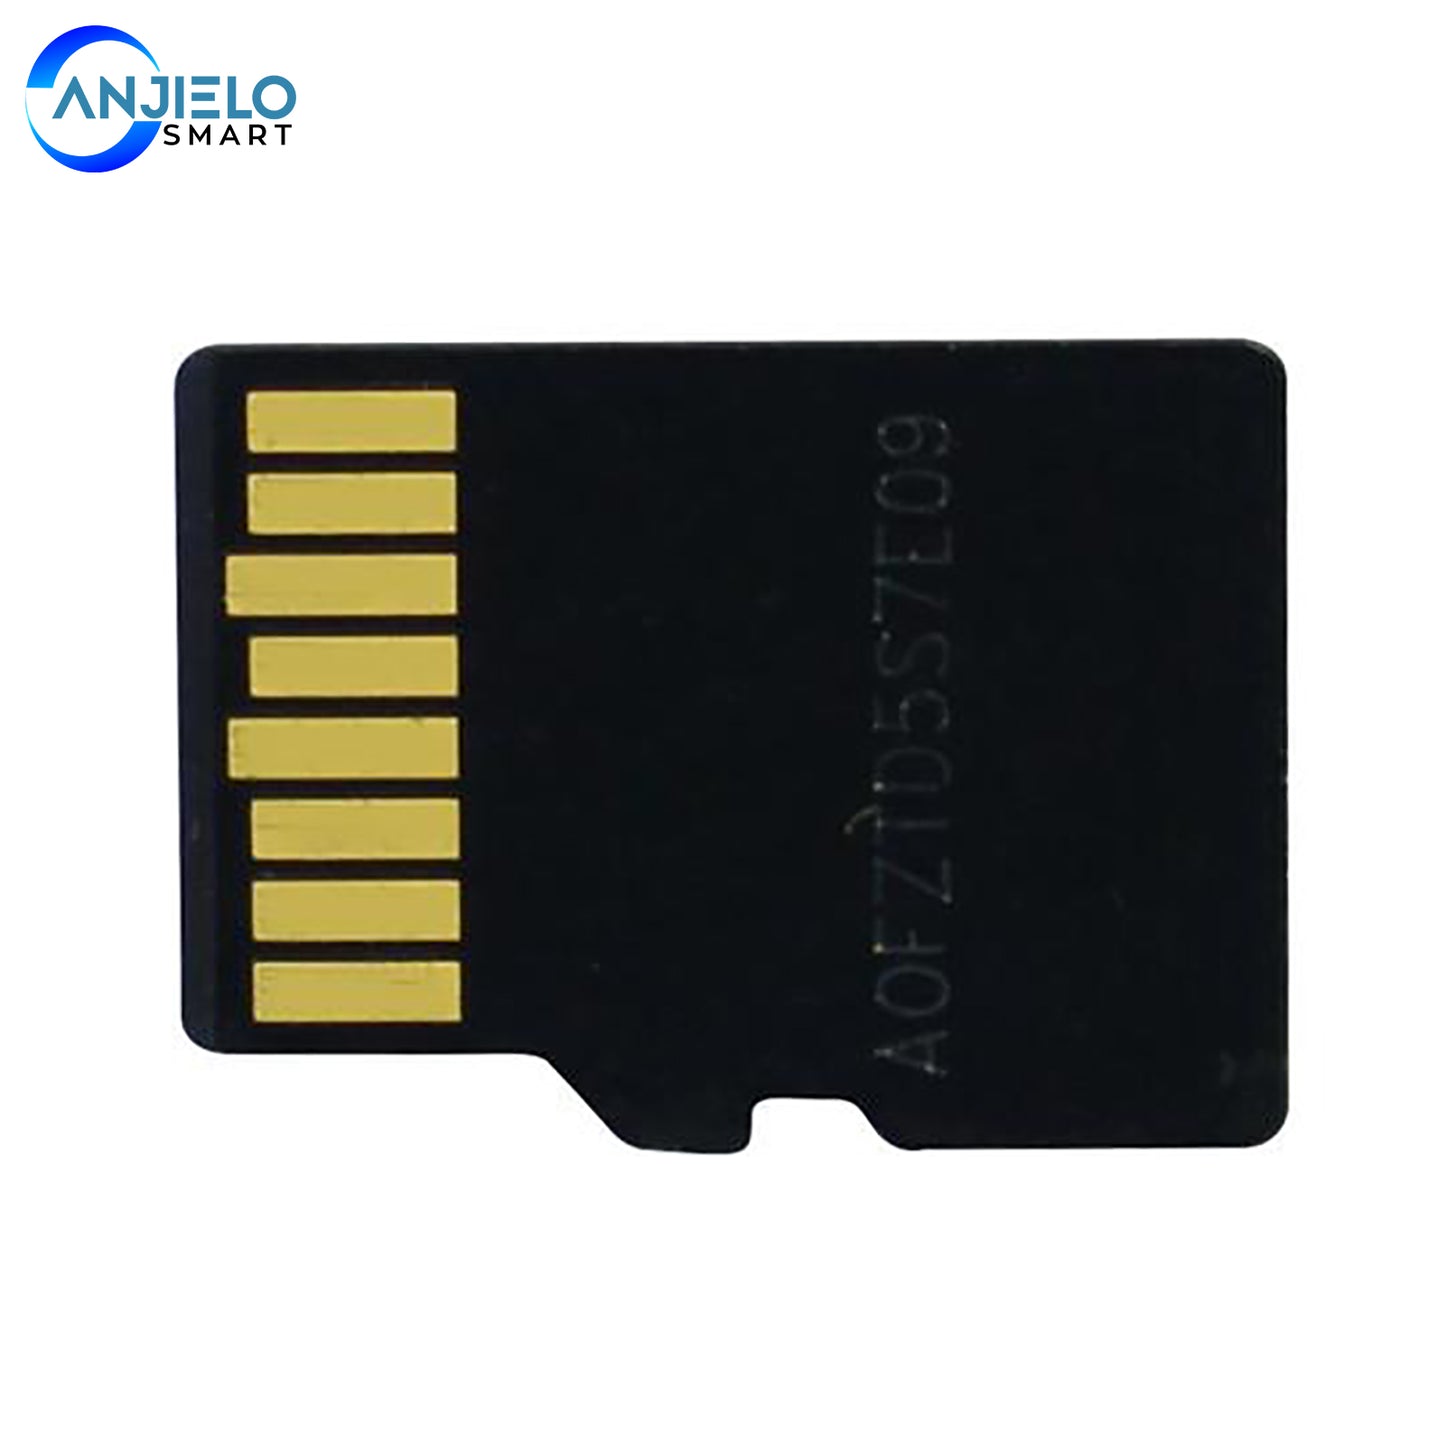 AnjieloSmart 16G SD Card for Video Doorbell Intercom System